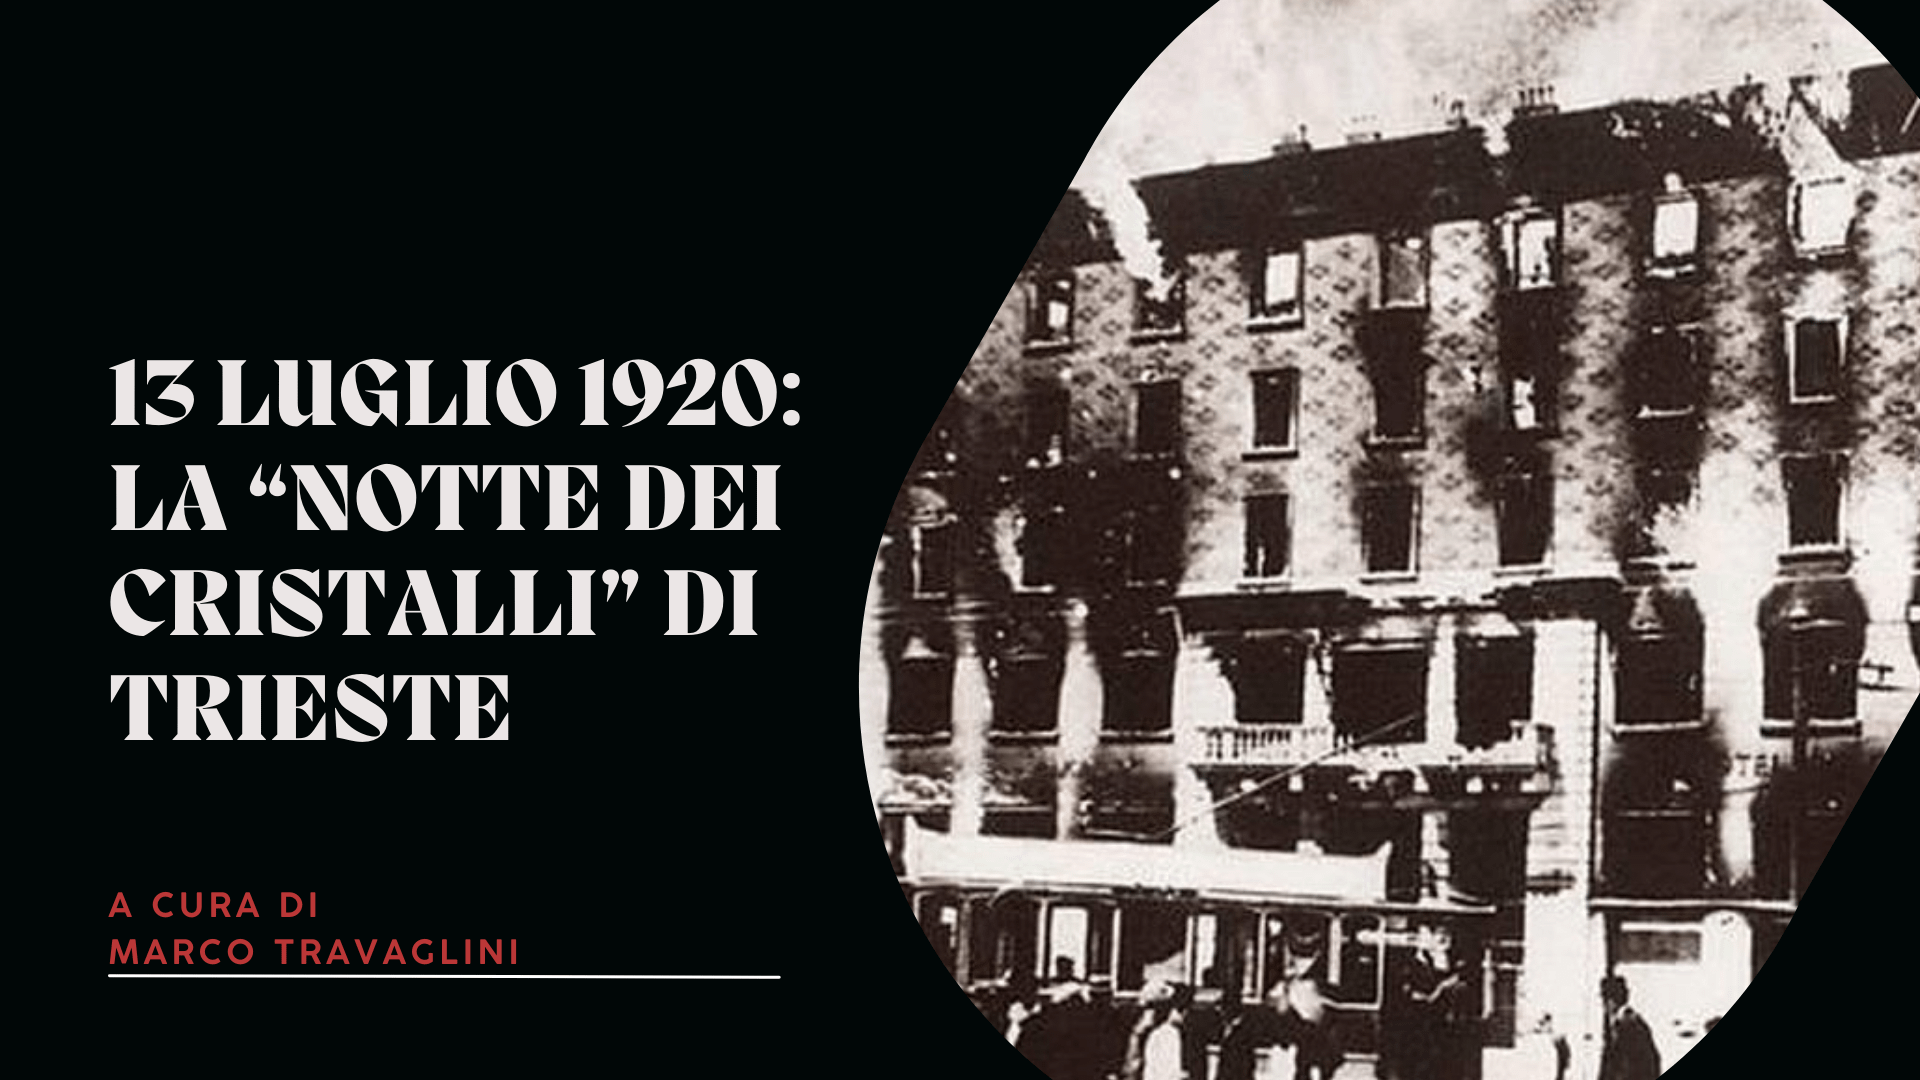 13 luglio 1920: la “notte dei cristalli” di Trieste